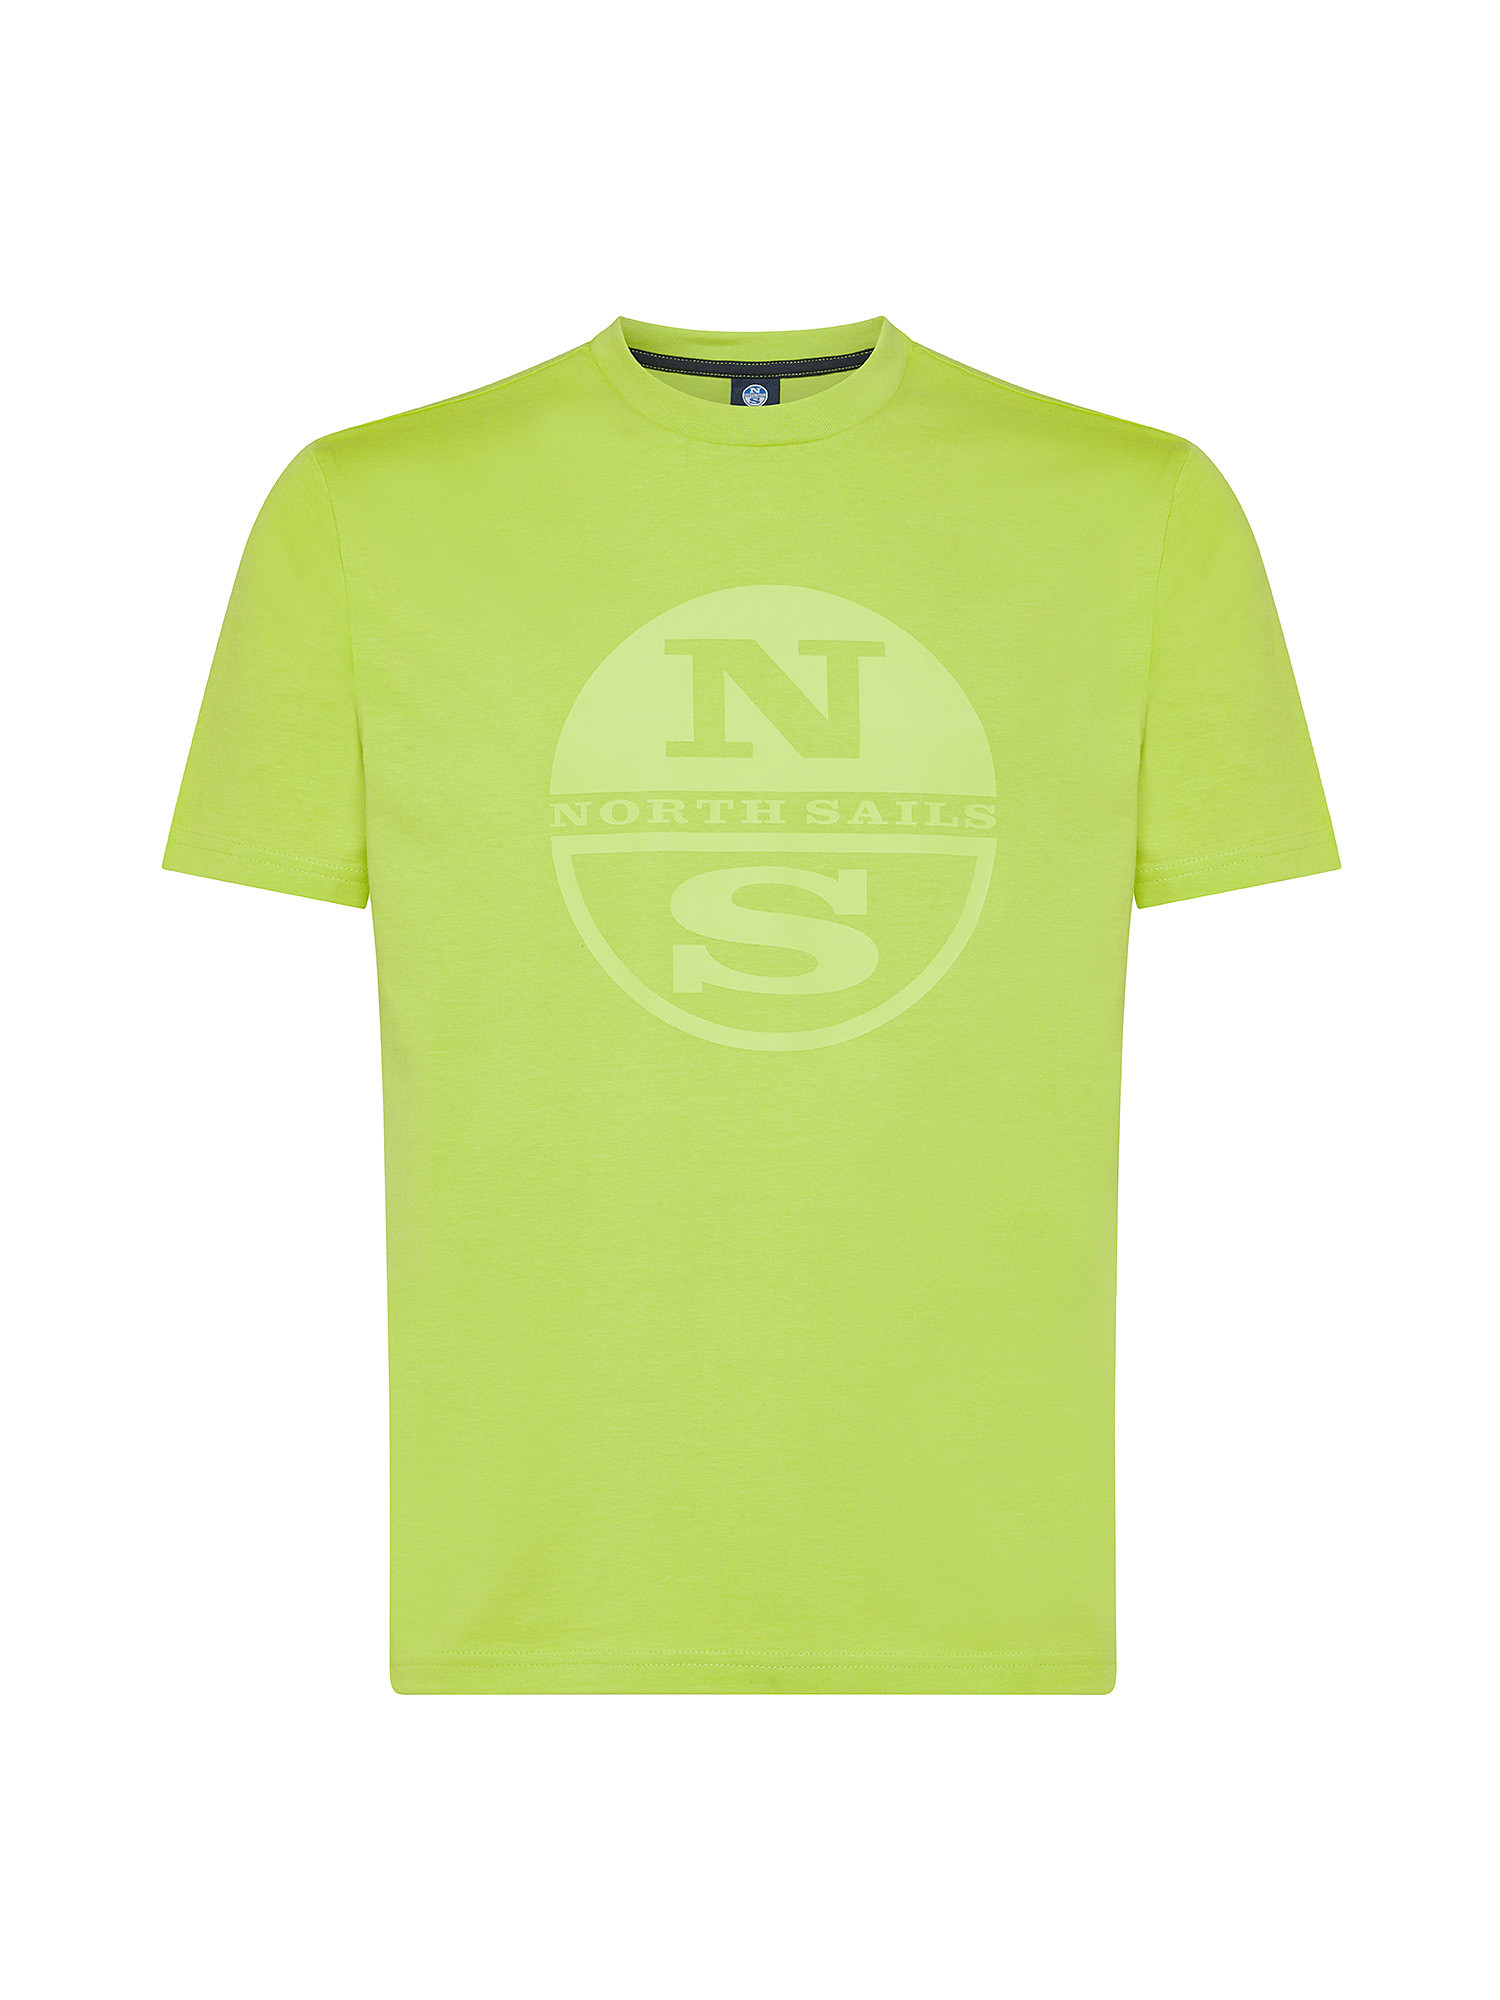 North sails - T-shirt in jersey di cotone organico con maxi logo stampato, Verde chiaro, large image number 0